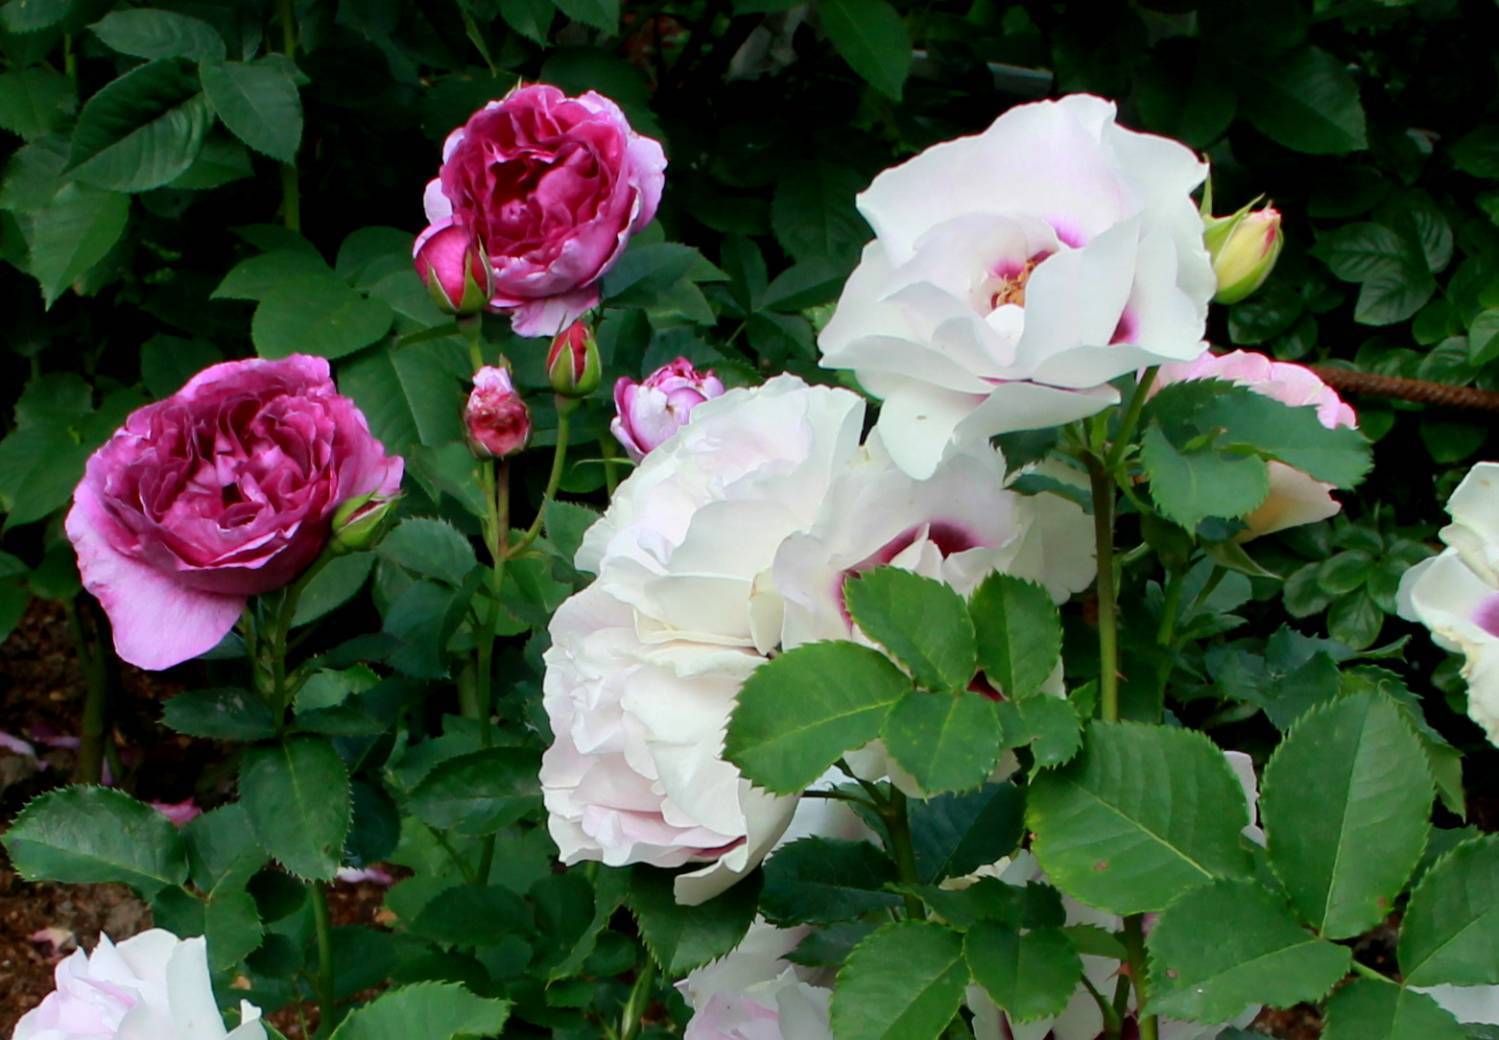 Разновидности прелестной розы микс. особенности выращивания и ухода за цветком в домашних условиях